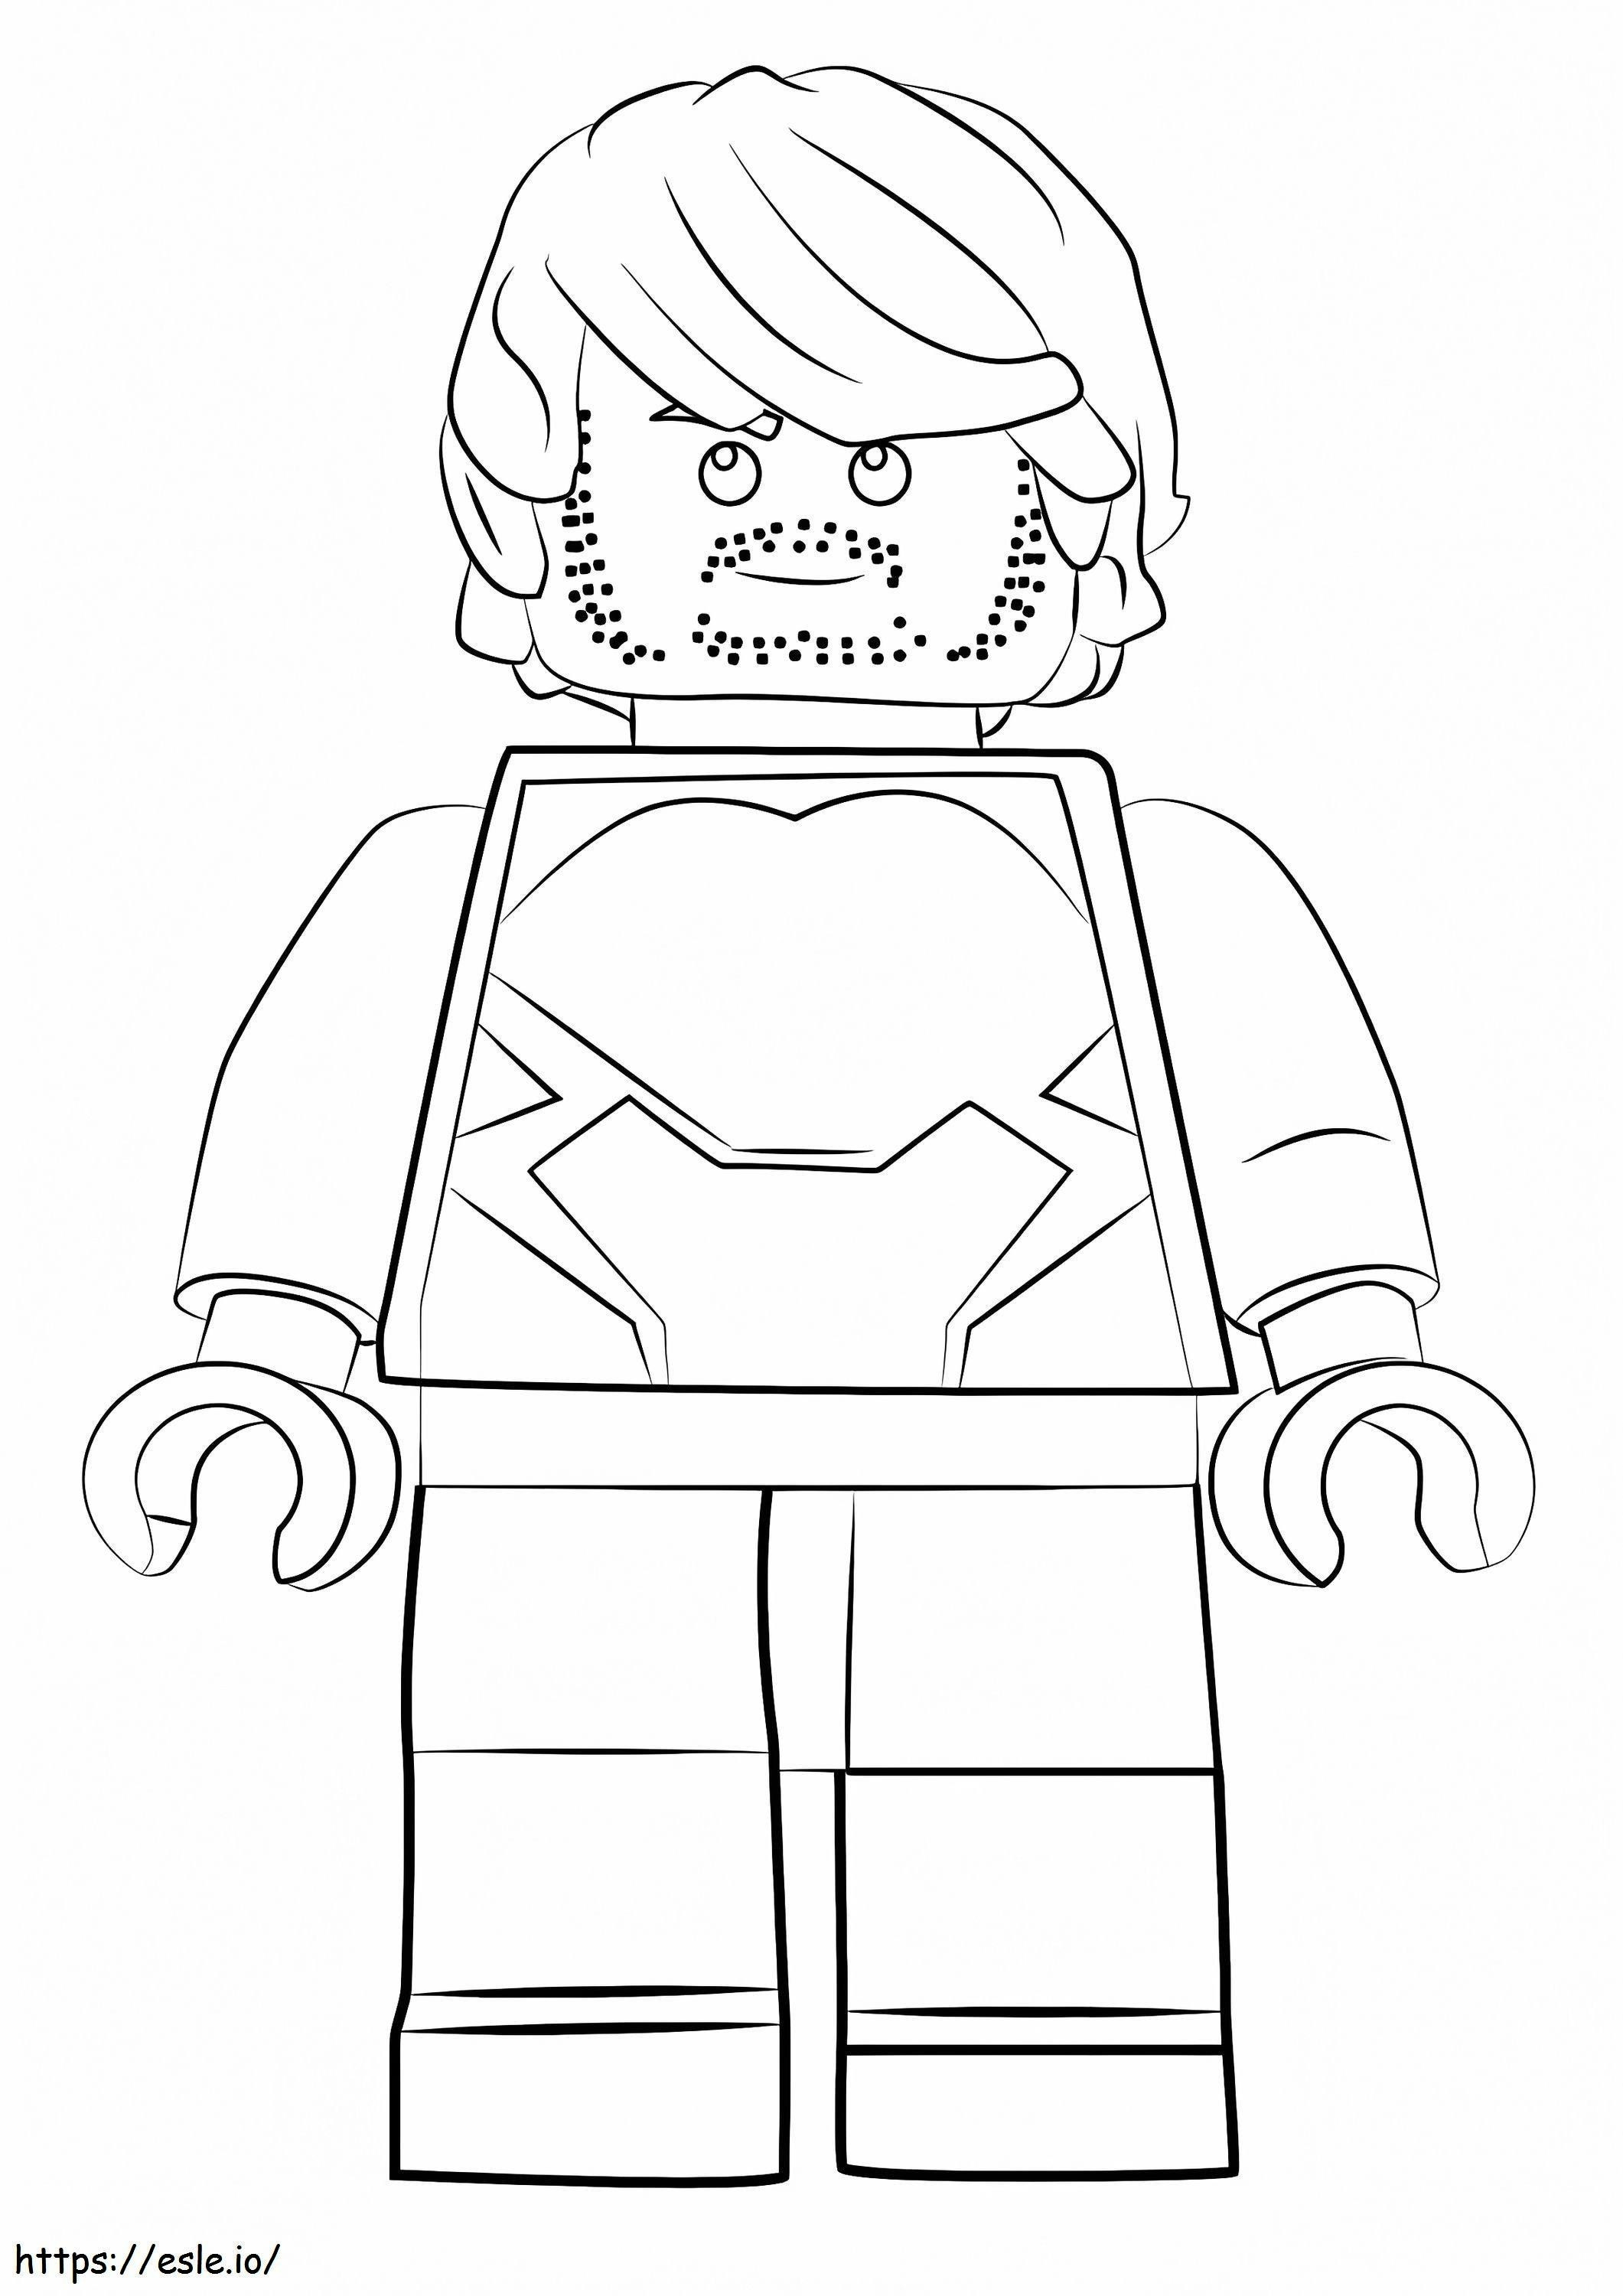 Lego Quicksilver coloring page